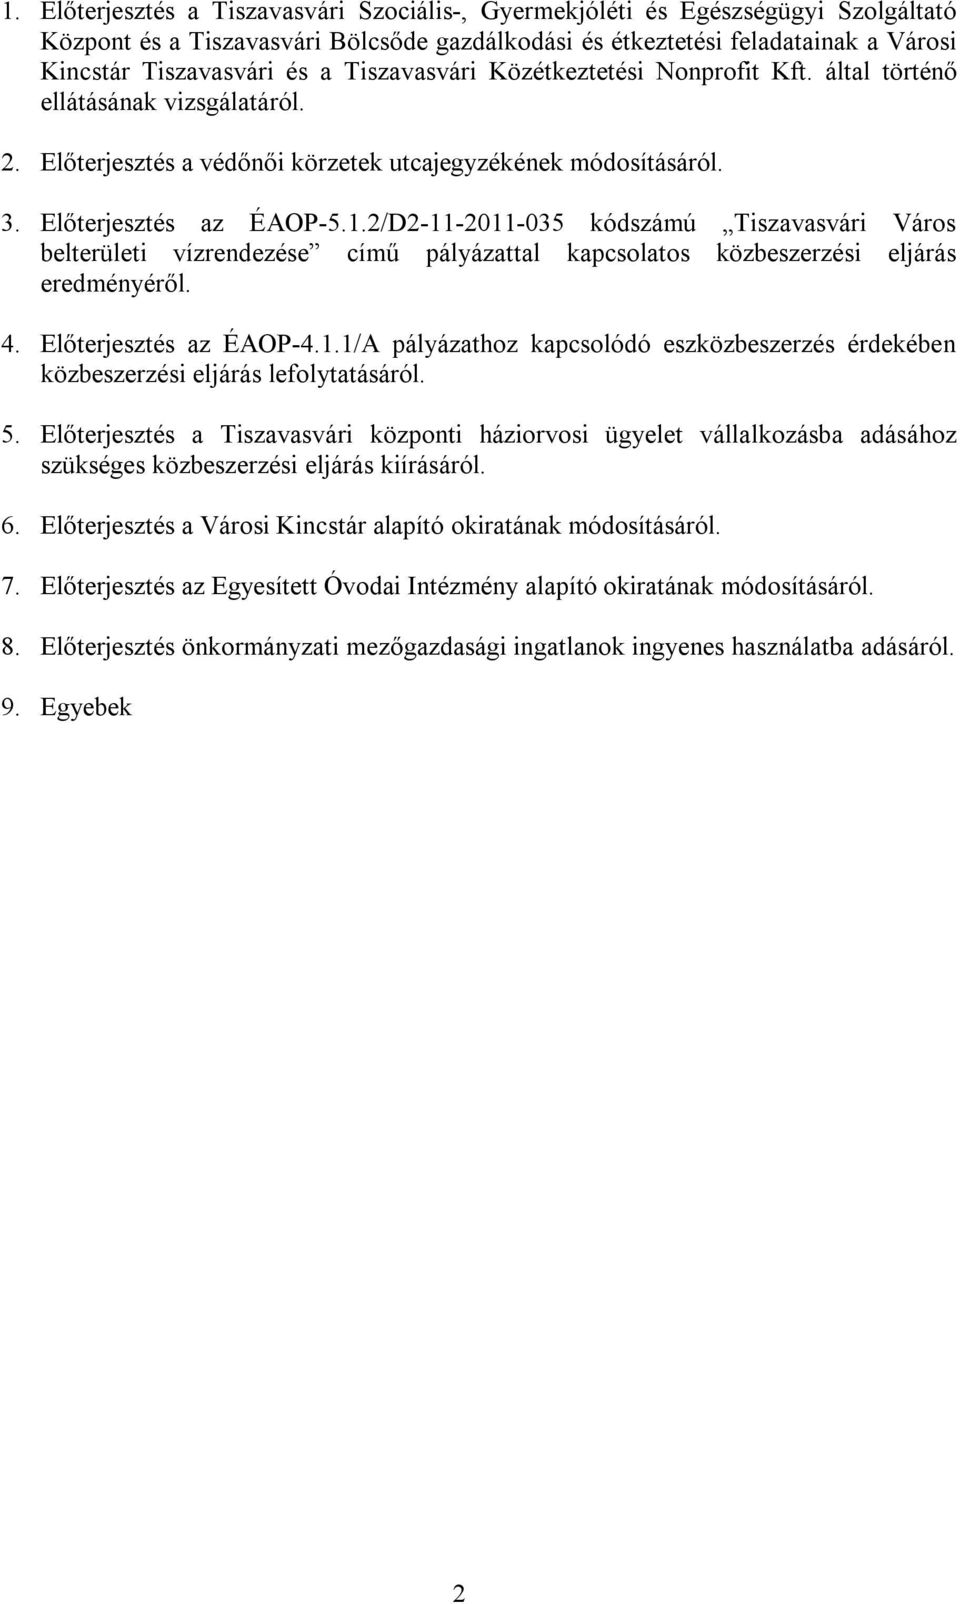 2/D2-11-2011-035 kódszámú Tiszavasvári Város belterületi vízrendezése című pályázattal kapcsolatos közbeszerzési eljárás eredményéről. 4. Előterjesztés az ÉAOP-4.1.1/A pályázathoz kapcsolódó eszközbeszerzés érdekében közbeszerzési eljárás lefolytatásáról.